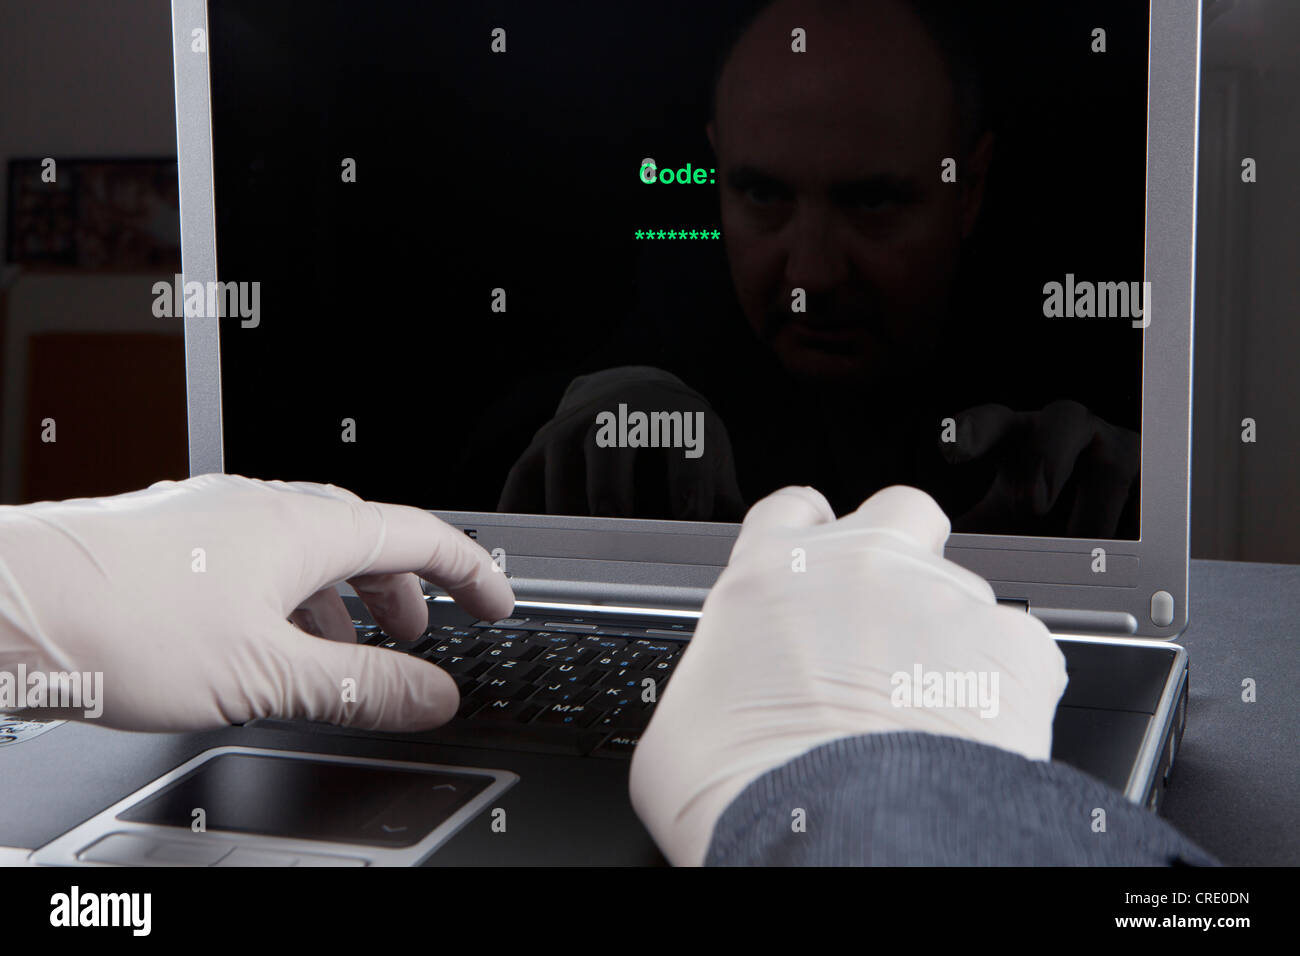 Hacker en utilisant un ordinateur portable, porter des gants en latex pour ne laisser aucune trace, image symbolique de la criminalité sur Internet Banque D'Images